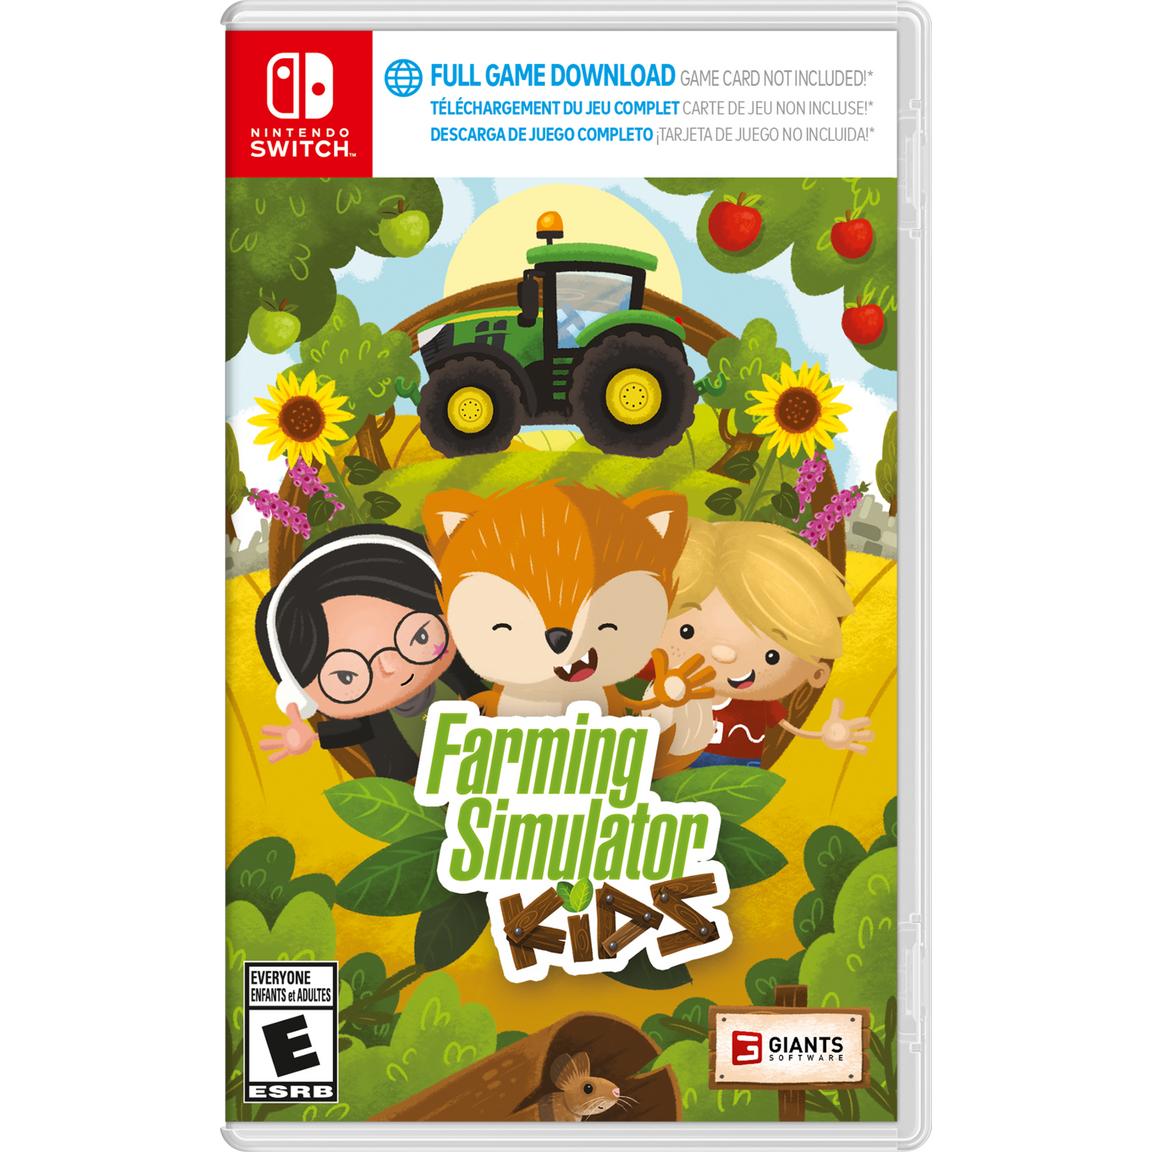 farming simulator nintendo switch edition [nintendo switch русская версия] Видеоигра Farming Simulator Kids - Nintendo Switch